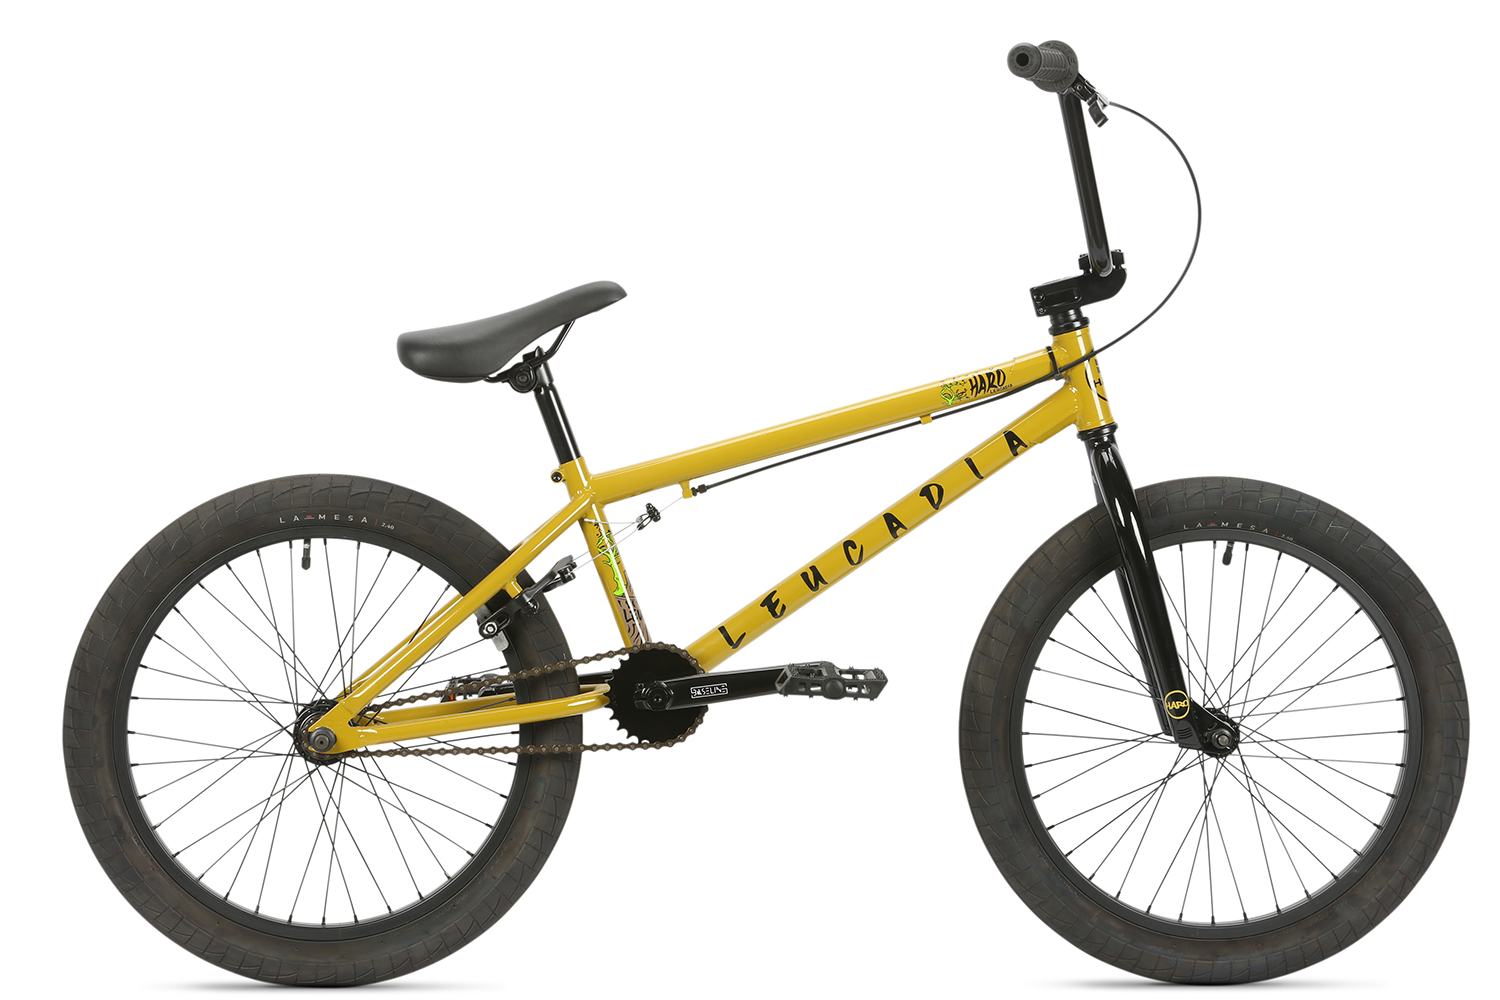 Экстремальный велосипед Haro Leucadia, год 2022, цвет Желтый, ростовка 20.5